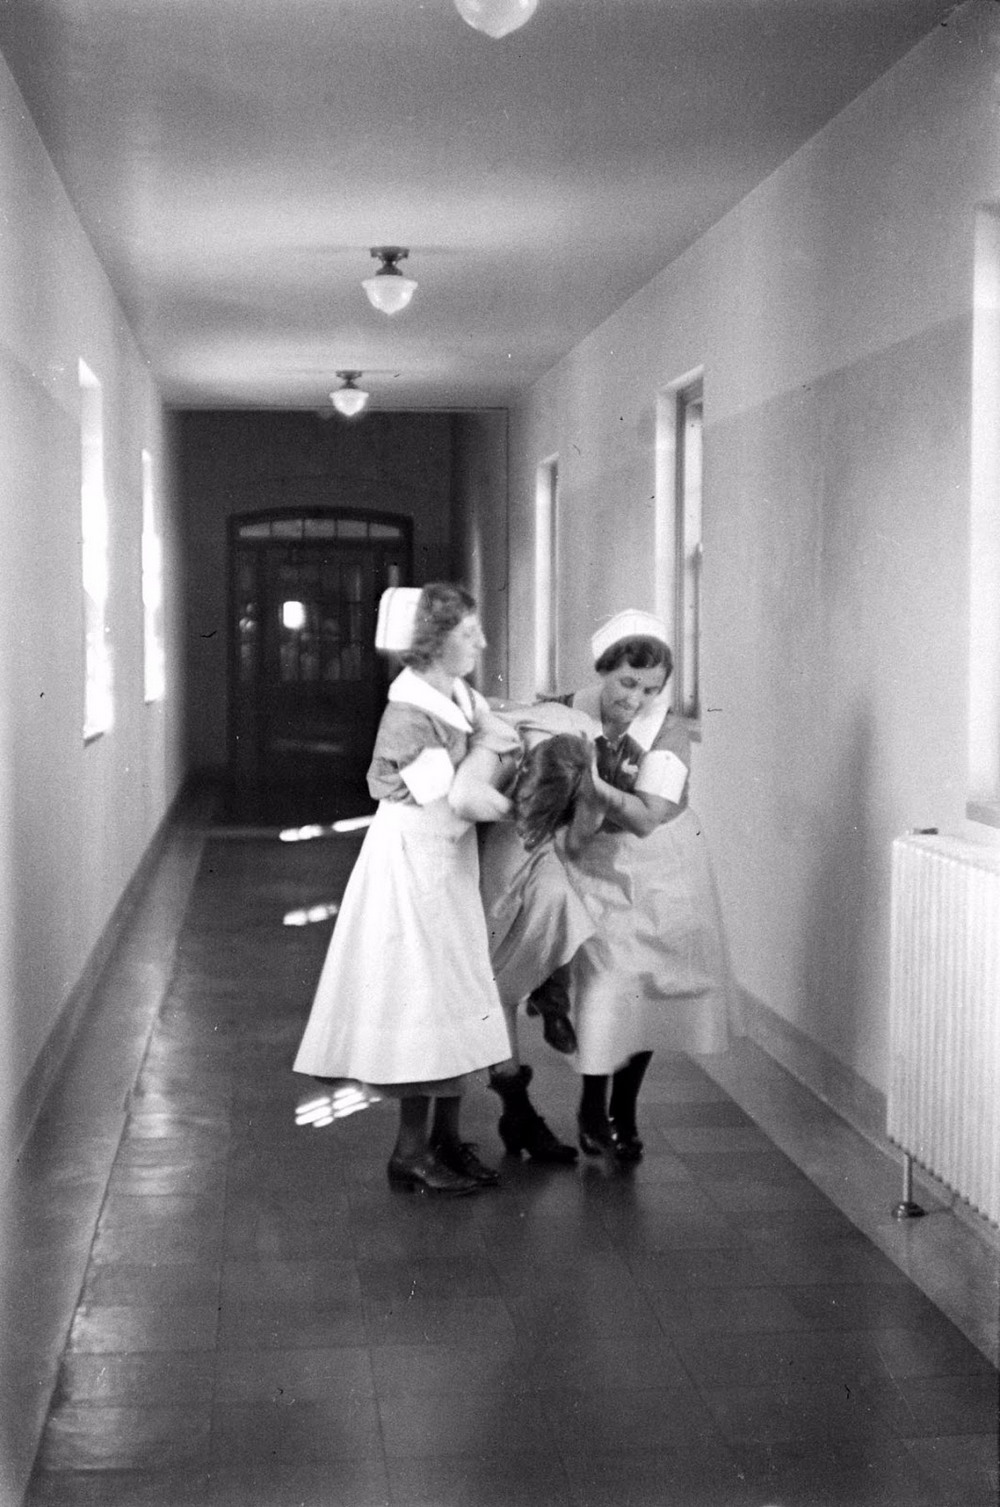 Пациенты психиатрической больницы в фотографиях Альфреда Эйзенштадта